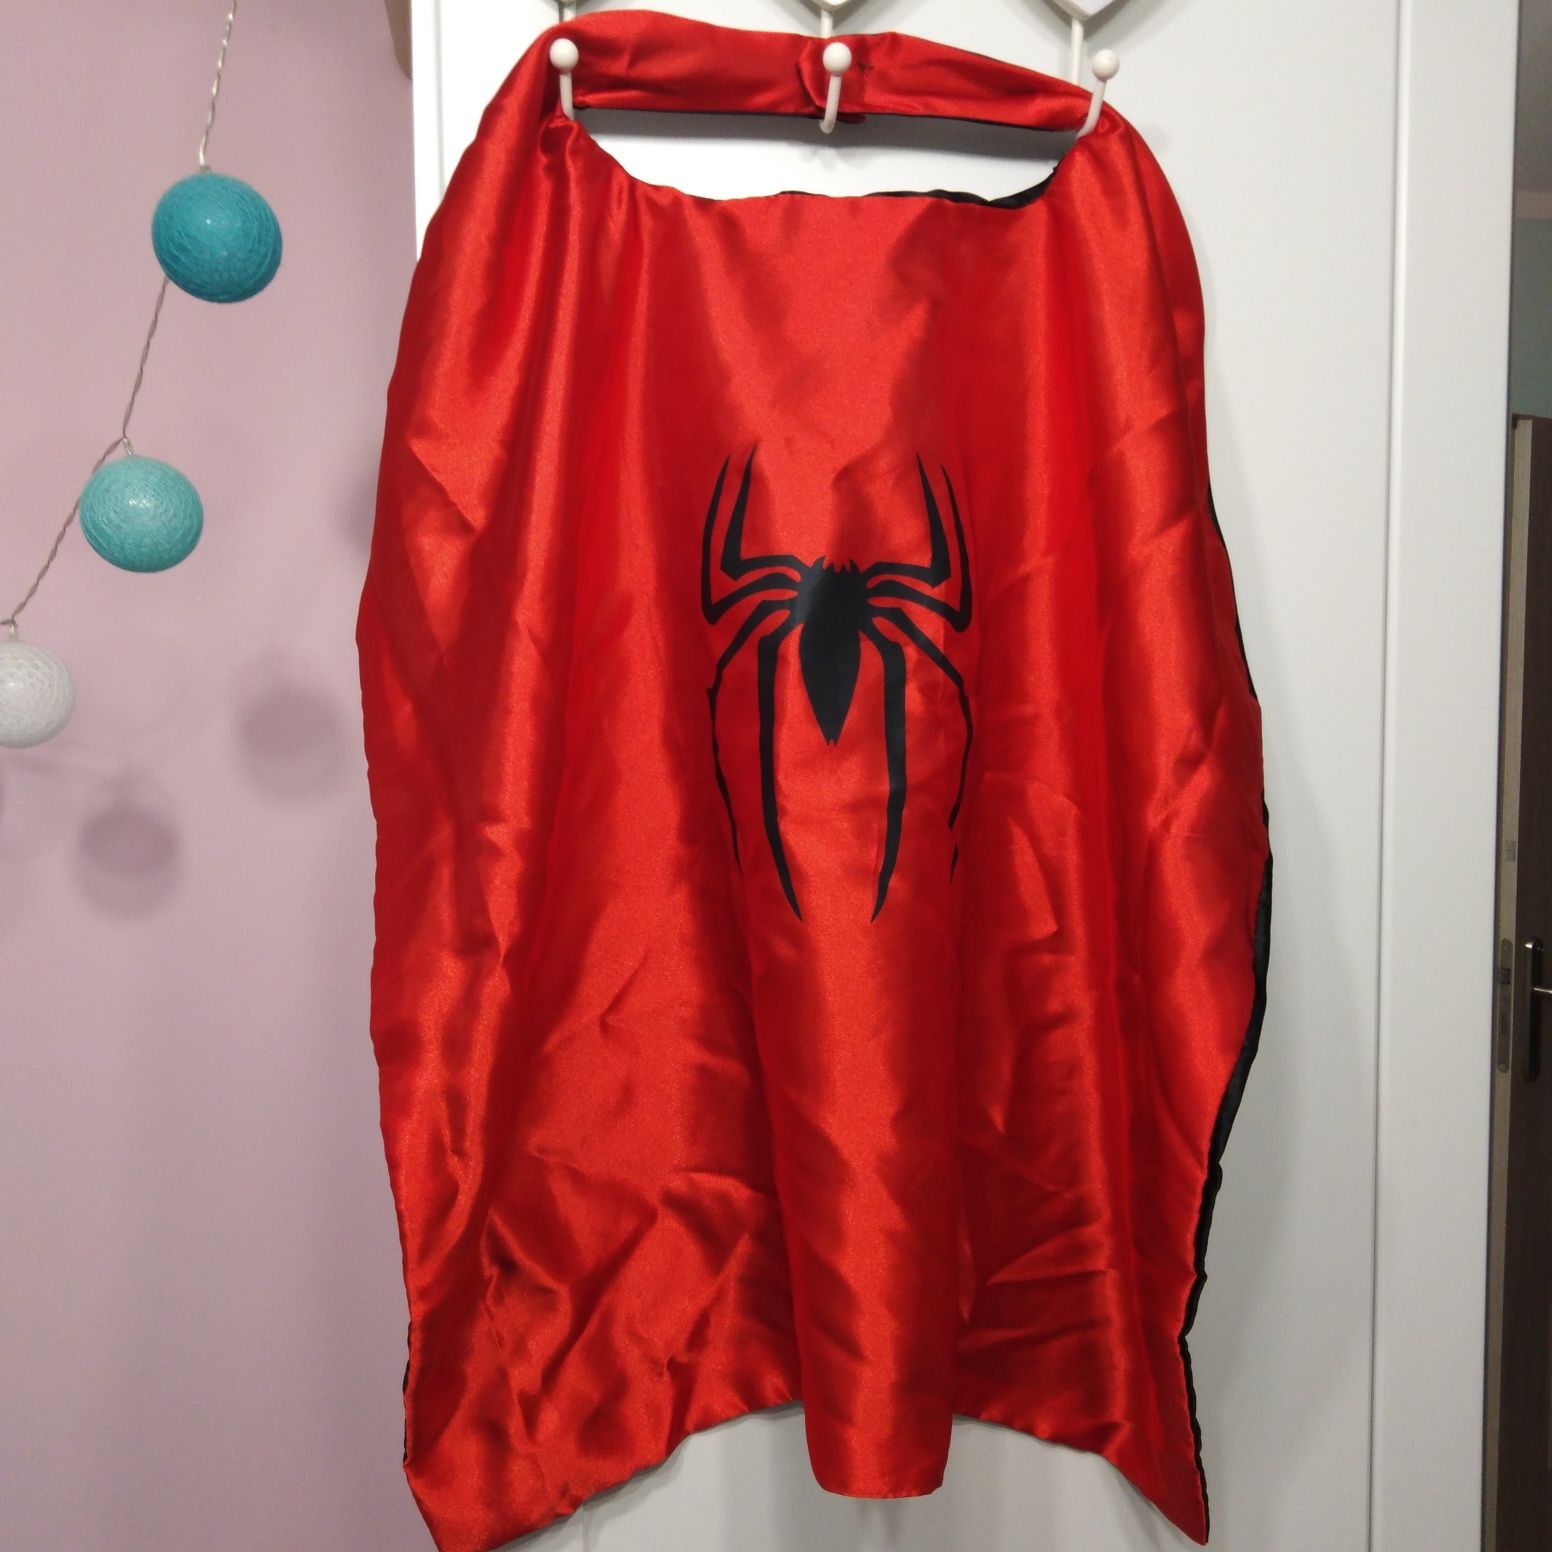 Spider-Man peleryna przebranie strój karnawałowy